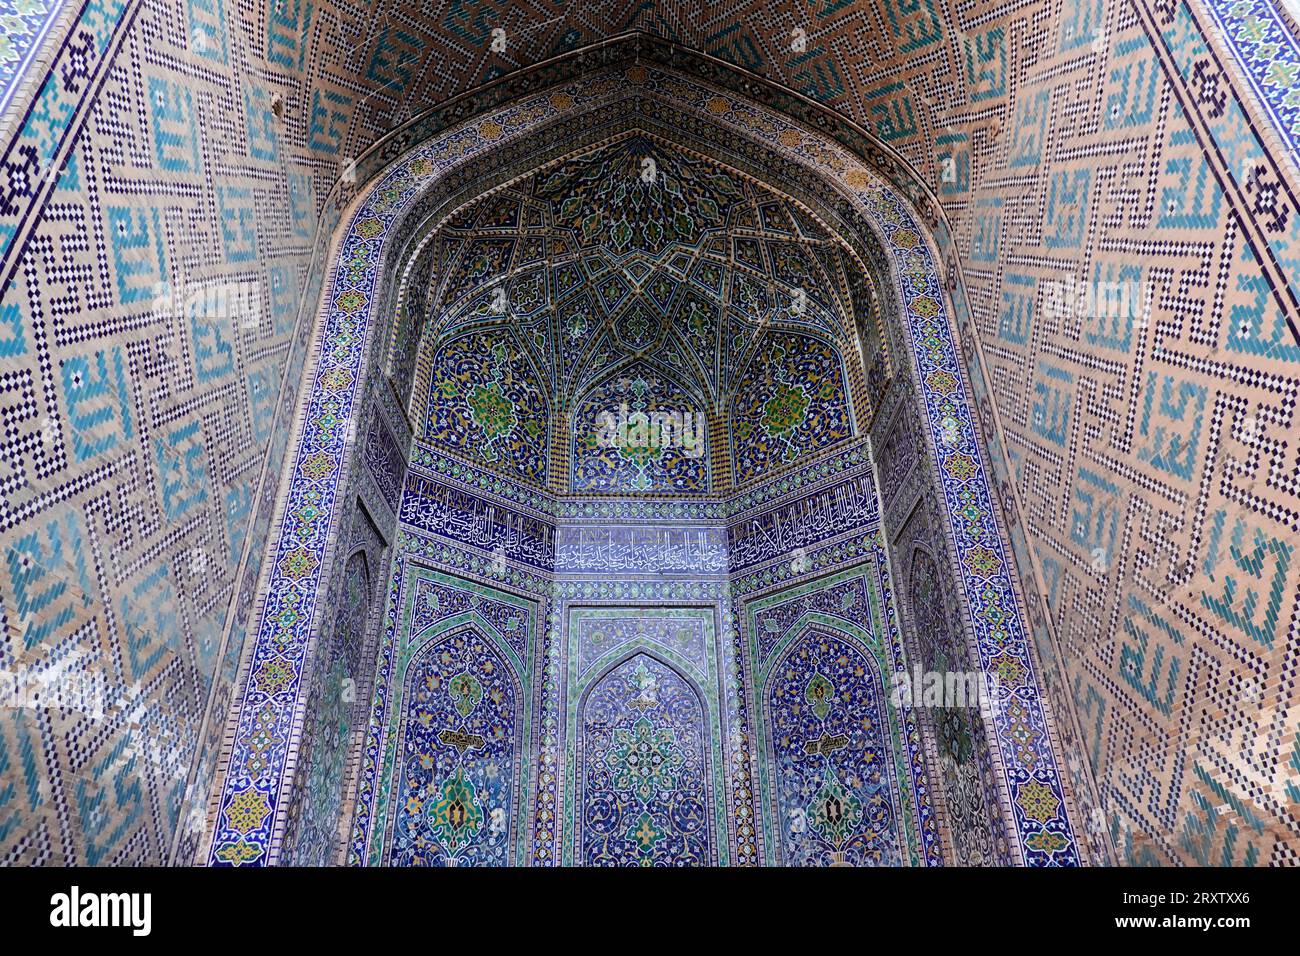 L'architecture islamique de renommée mondiale de Samarkand, site du patrimoine mondial de l'UNESCO, Ouzbékistan, Asie centrale, Asie Banque D'Images